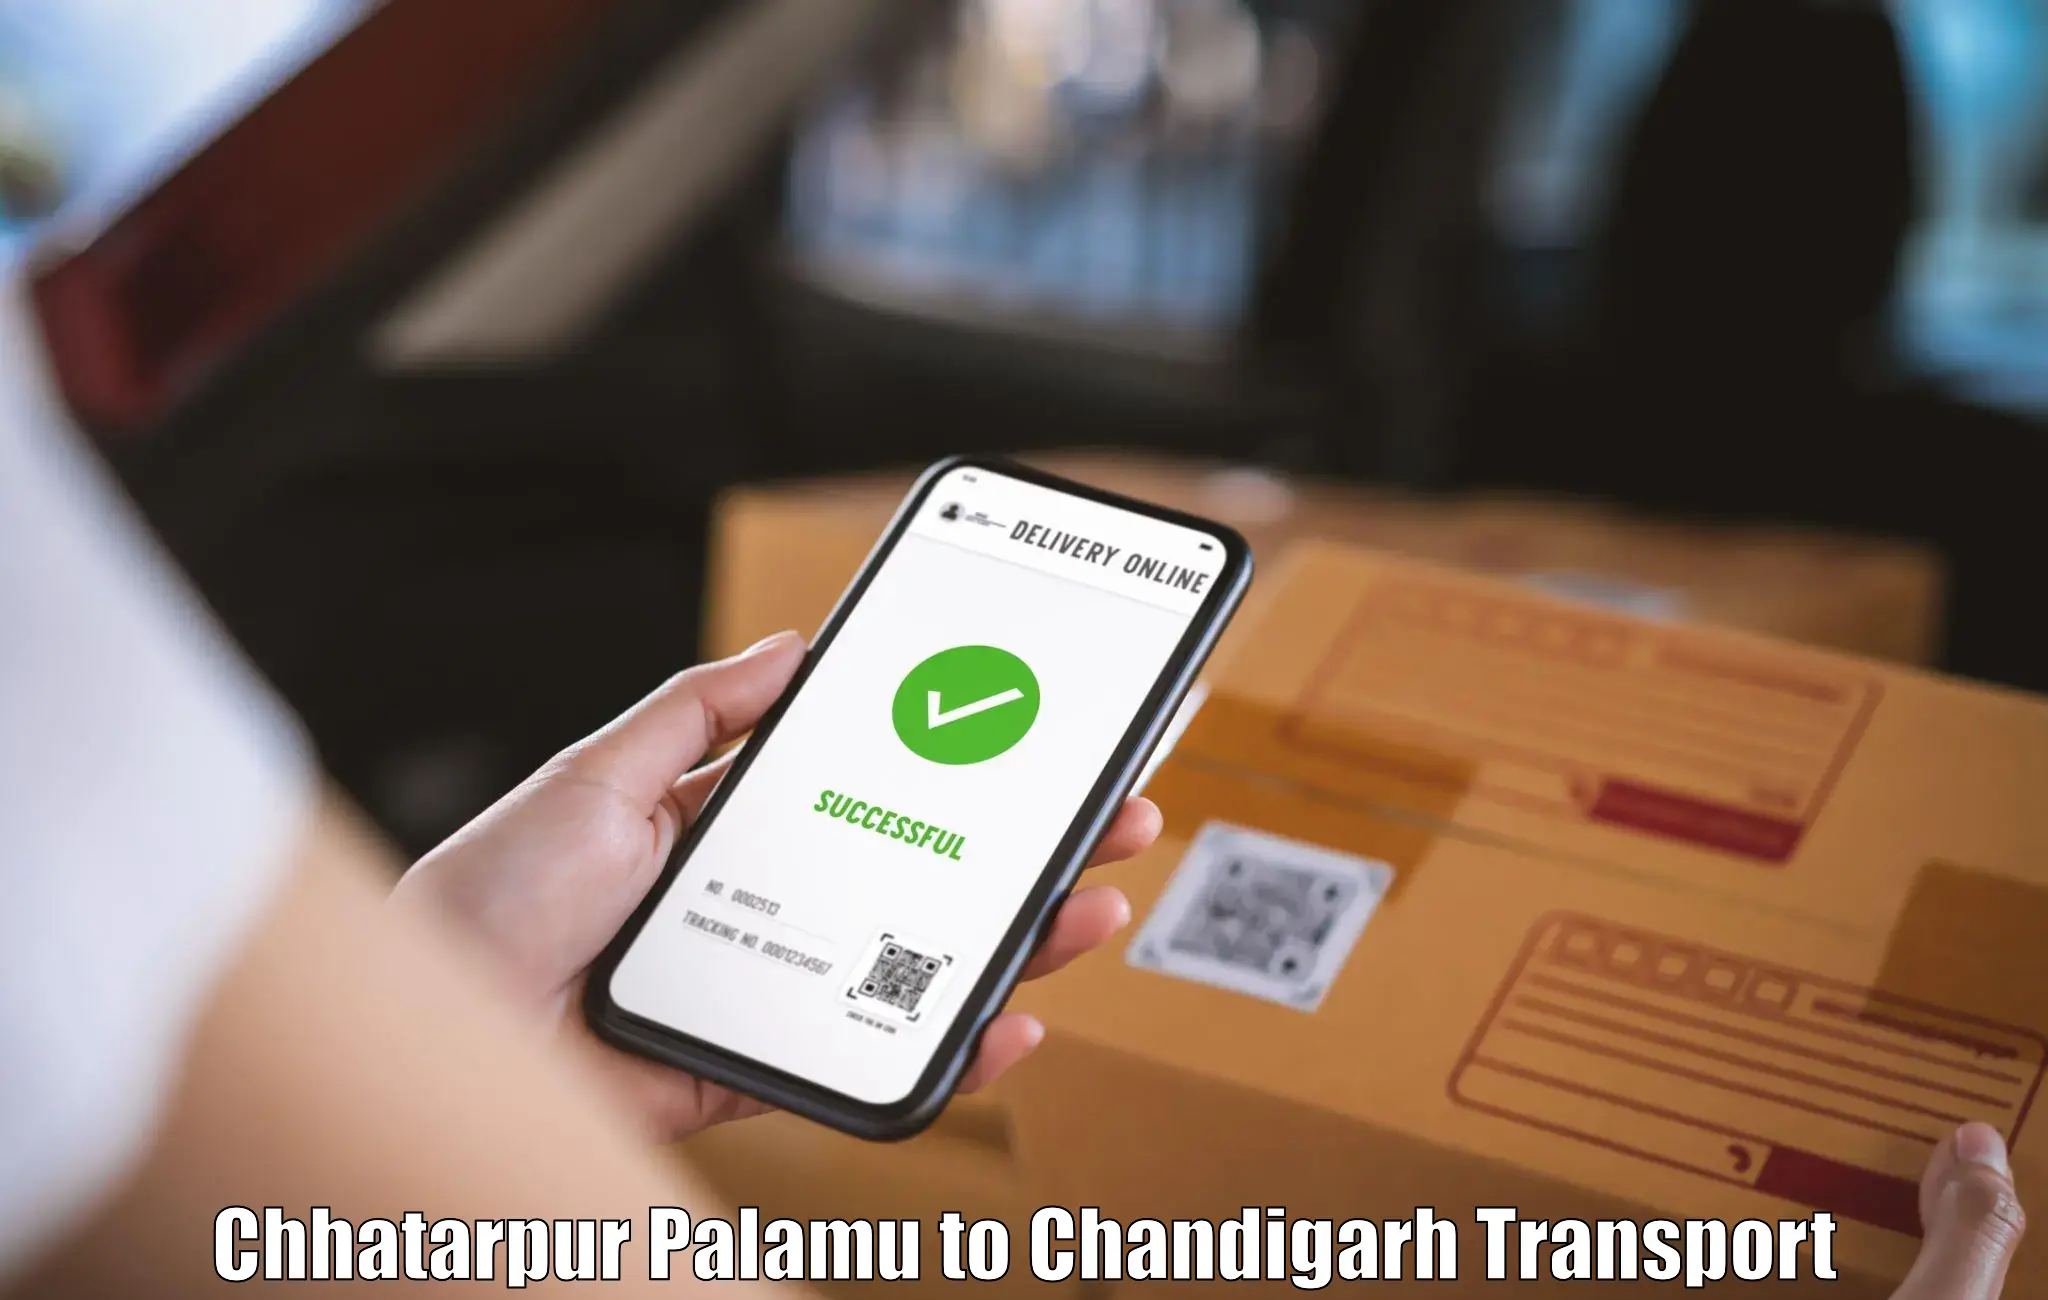 Cycle transportation service Chhatarpur Palamu to Panjab University Chandigarh